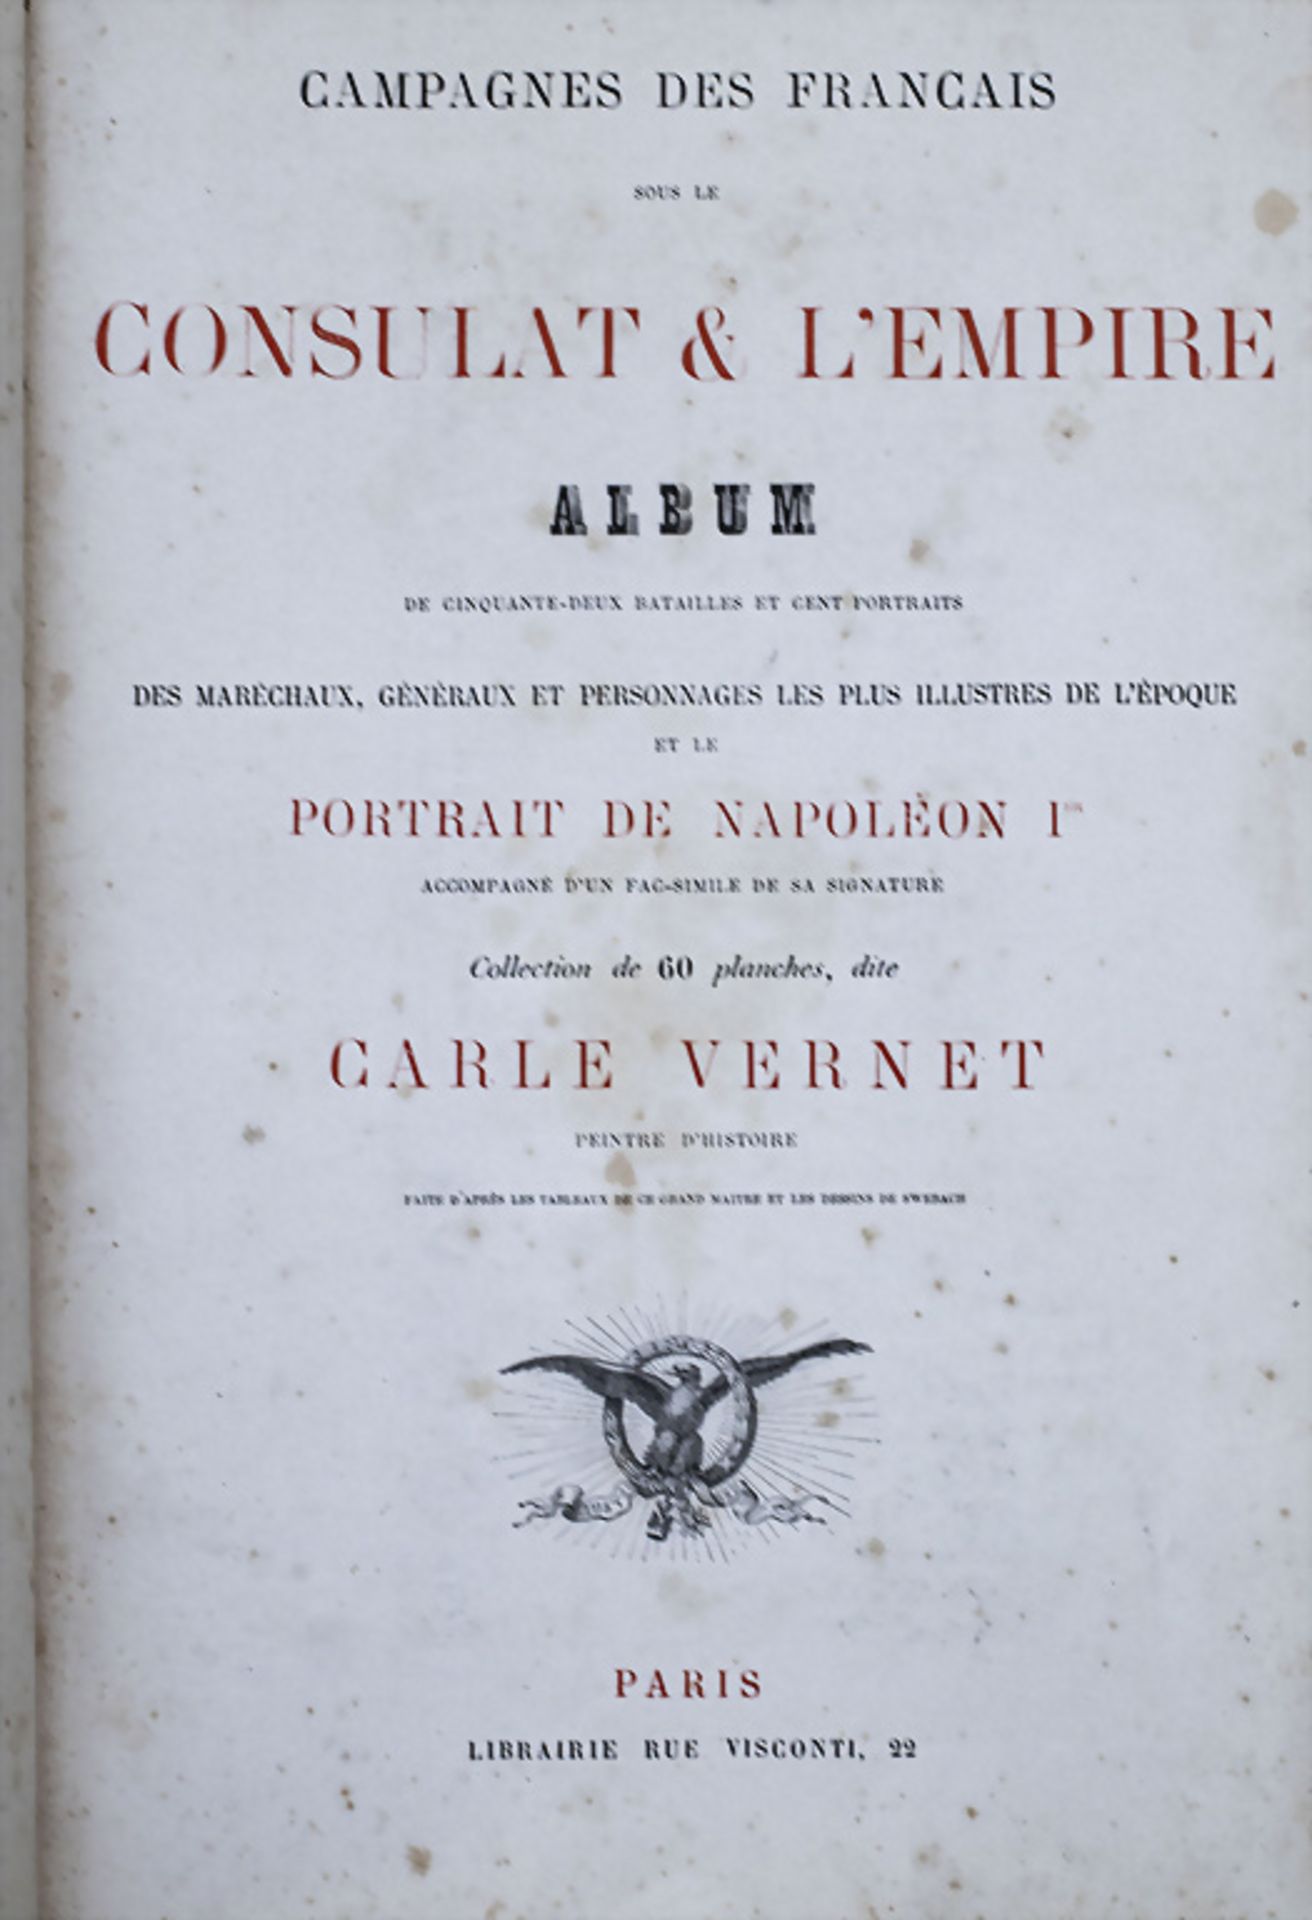 Campagnes des francais sous le consulat et l'empire, Paris, 19. Jh. - Image 2 of 5